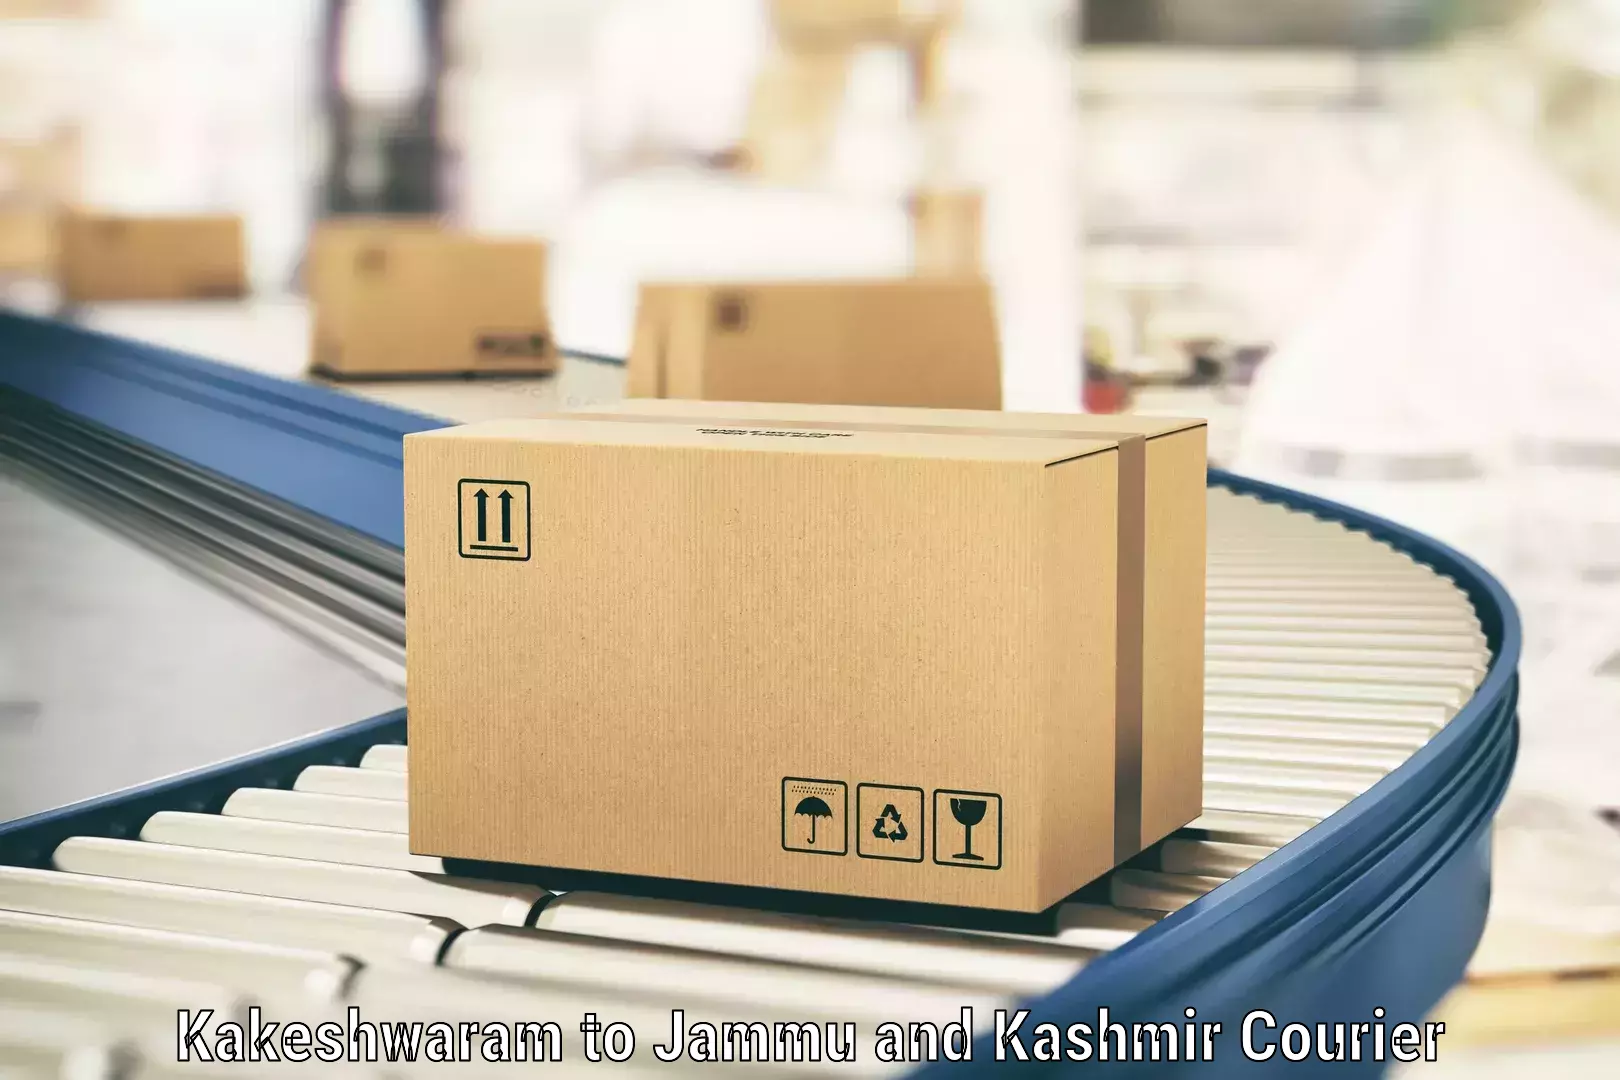 Express courier capabilities Kakeshwaram to Jammu